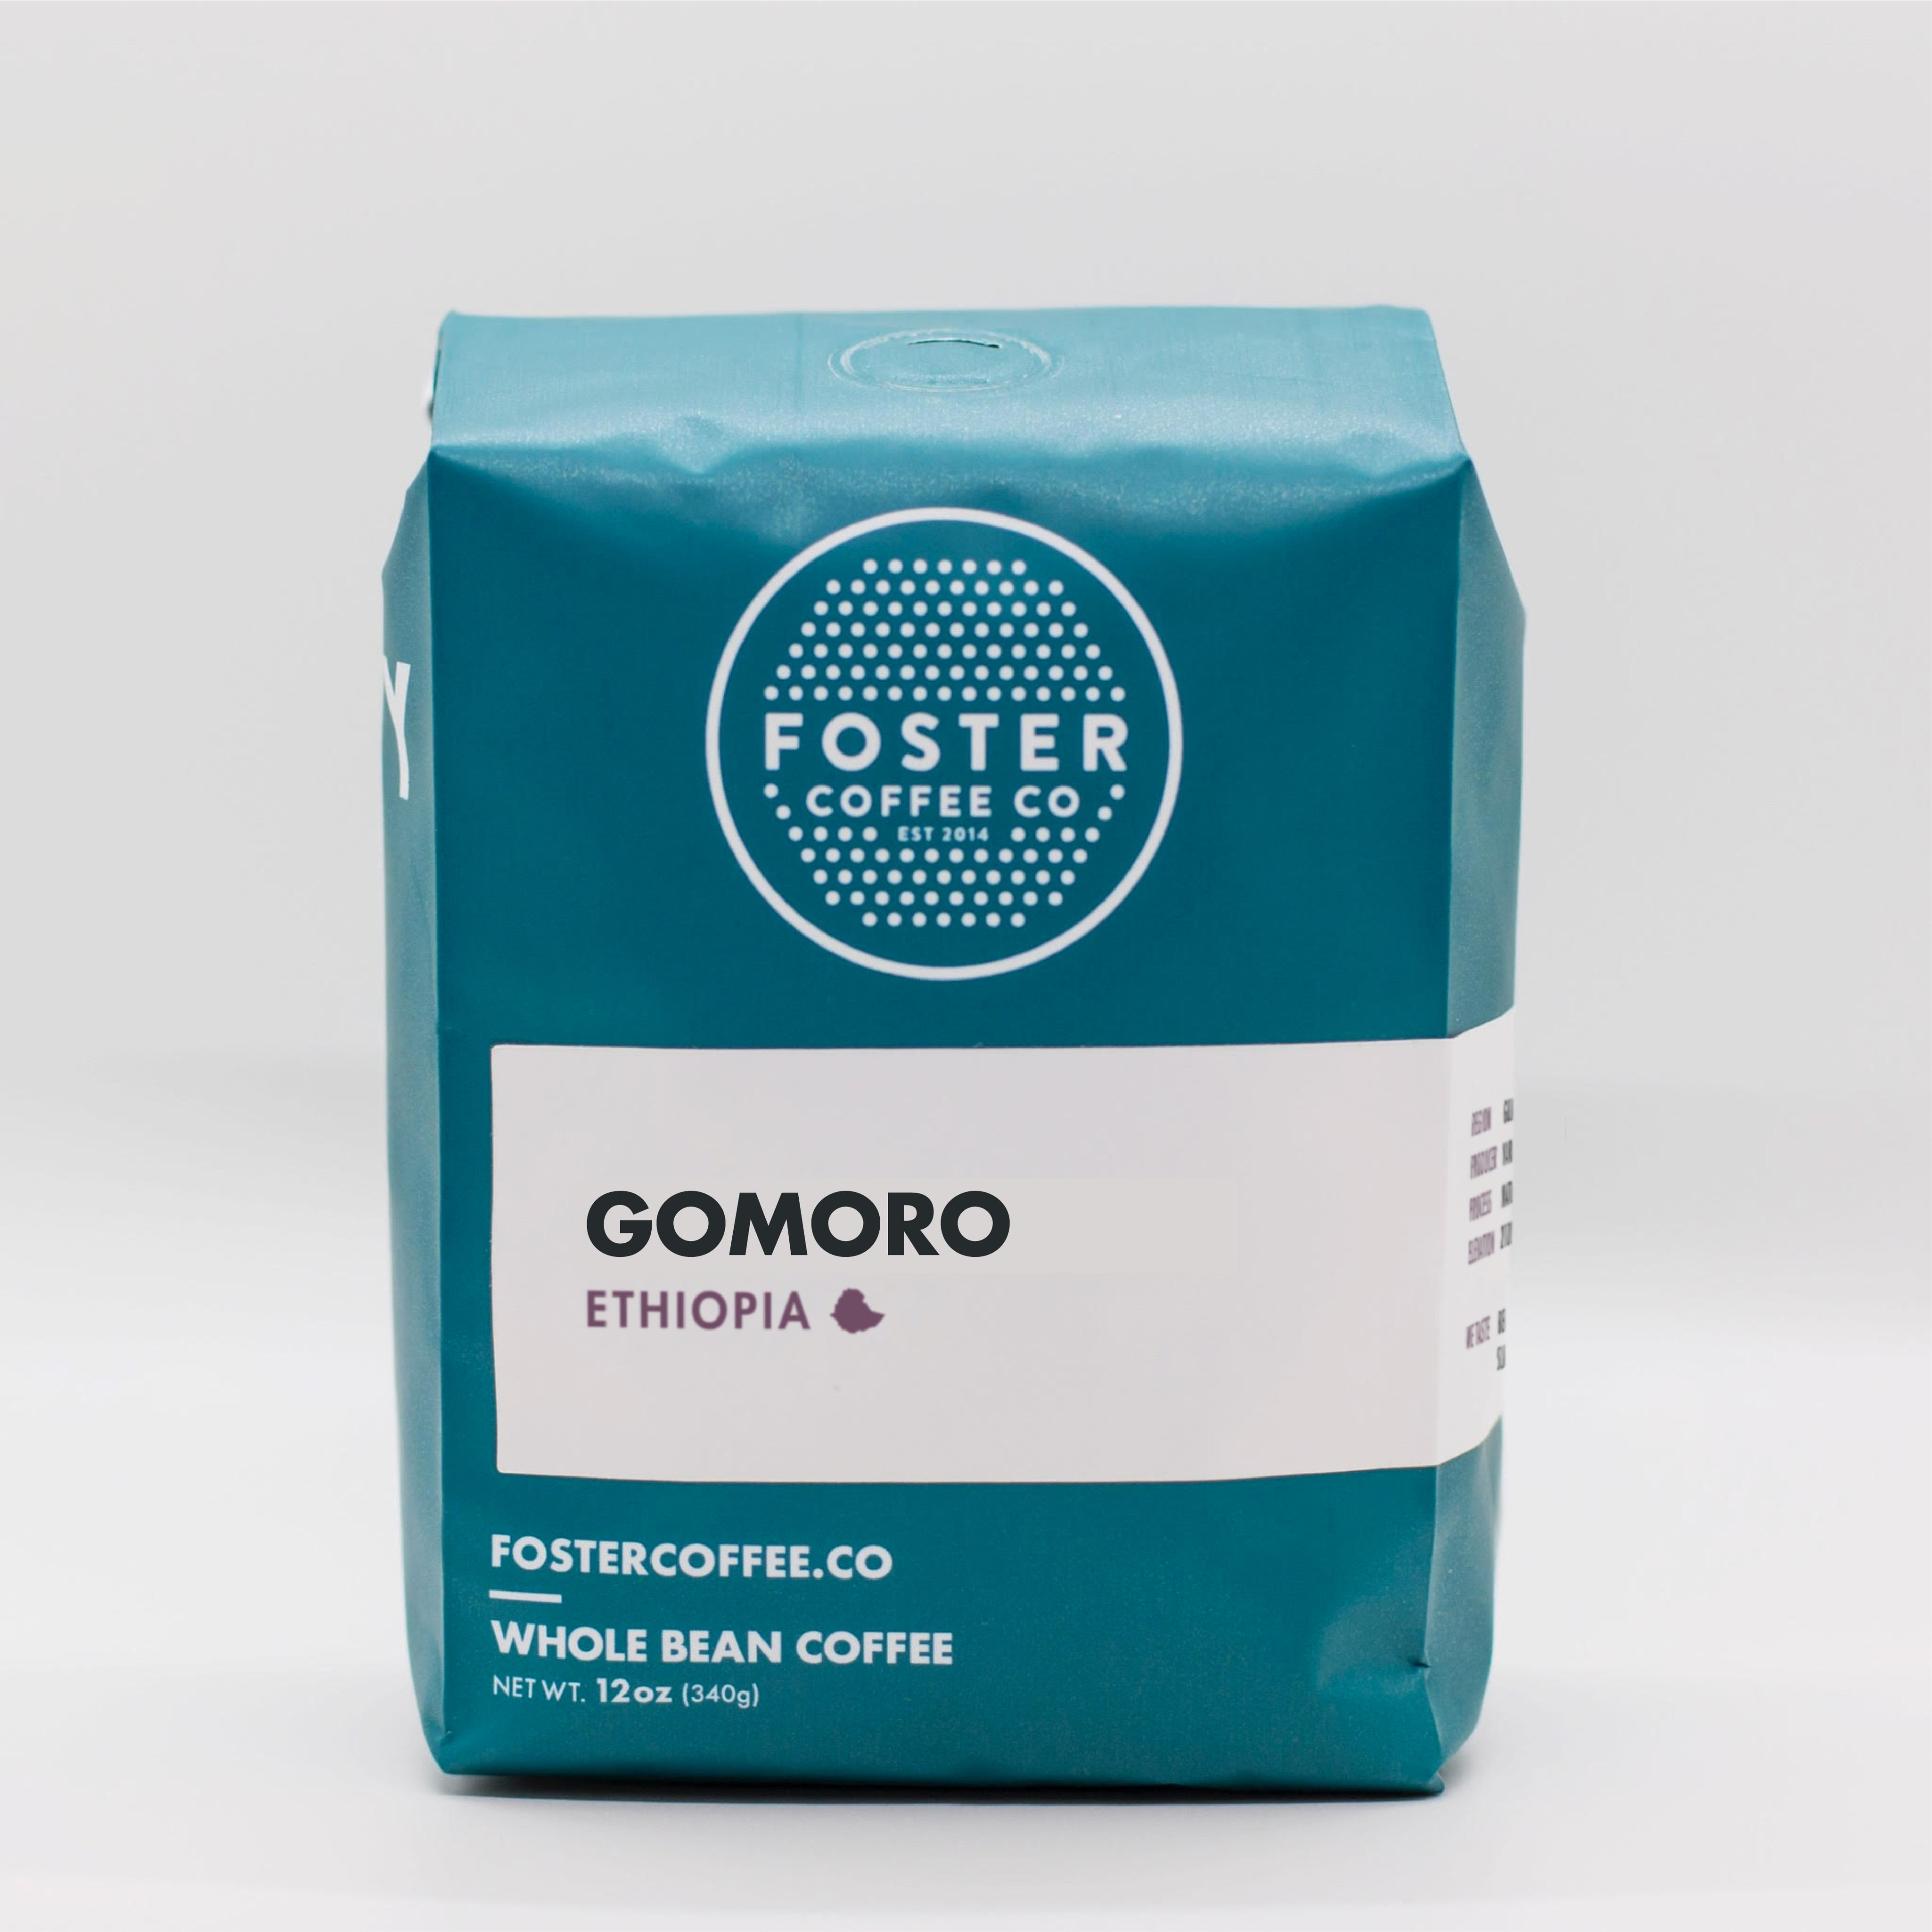 Gomoro (Ethiopia) - Foster Coffee